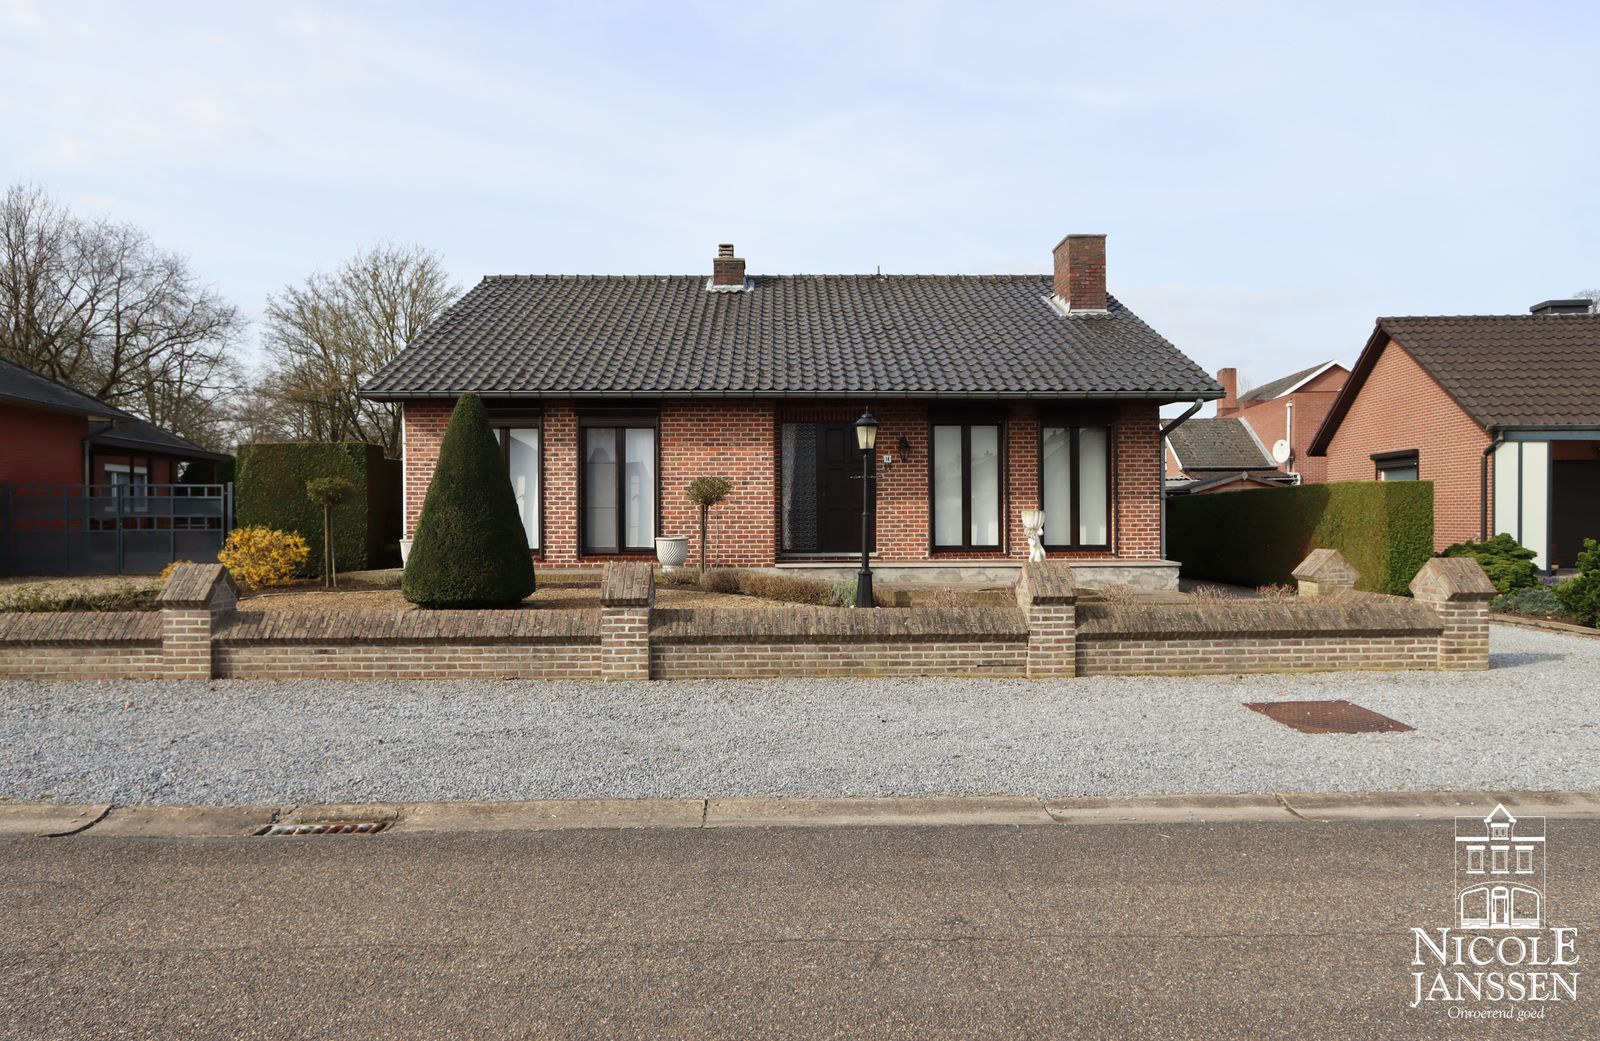 1 Nicole Janssen - huis te koop - Haexkamp 14 te Geistingen - voorzijde2.jpg